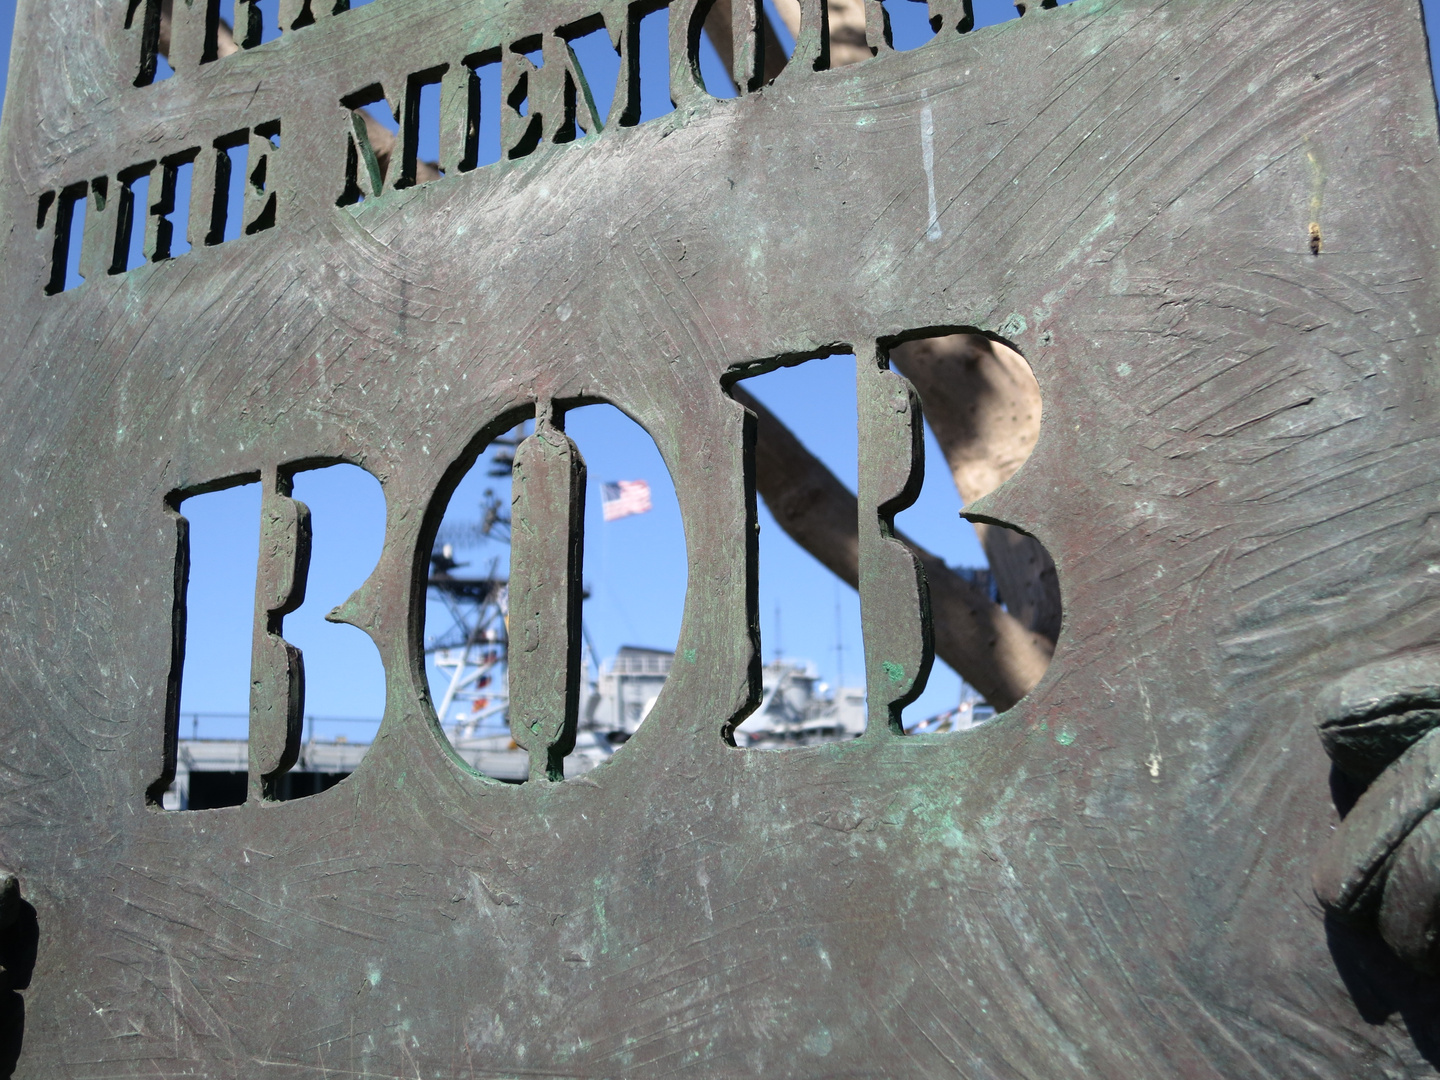 Bob Hope Memorial